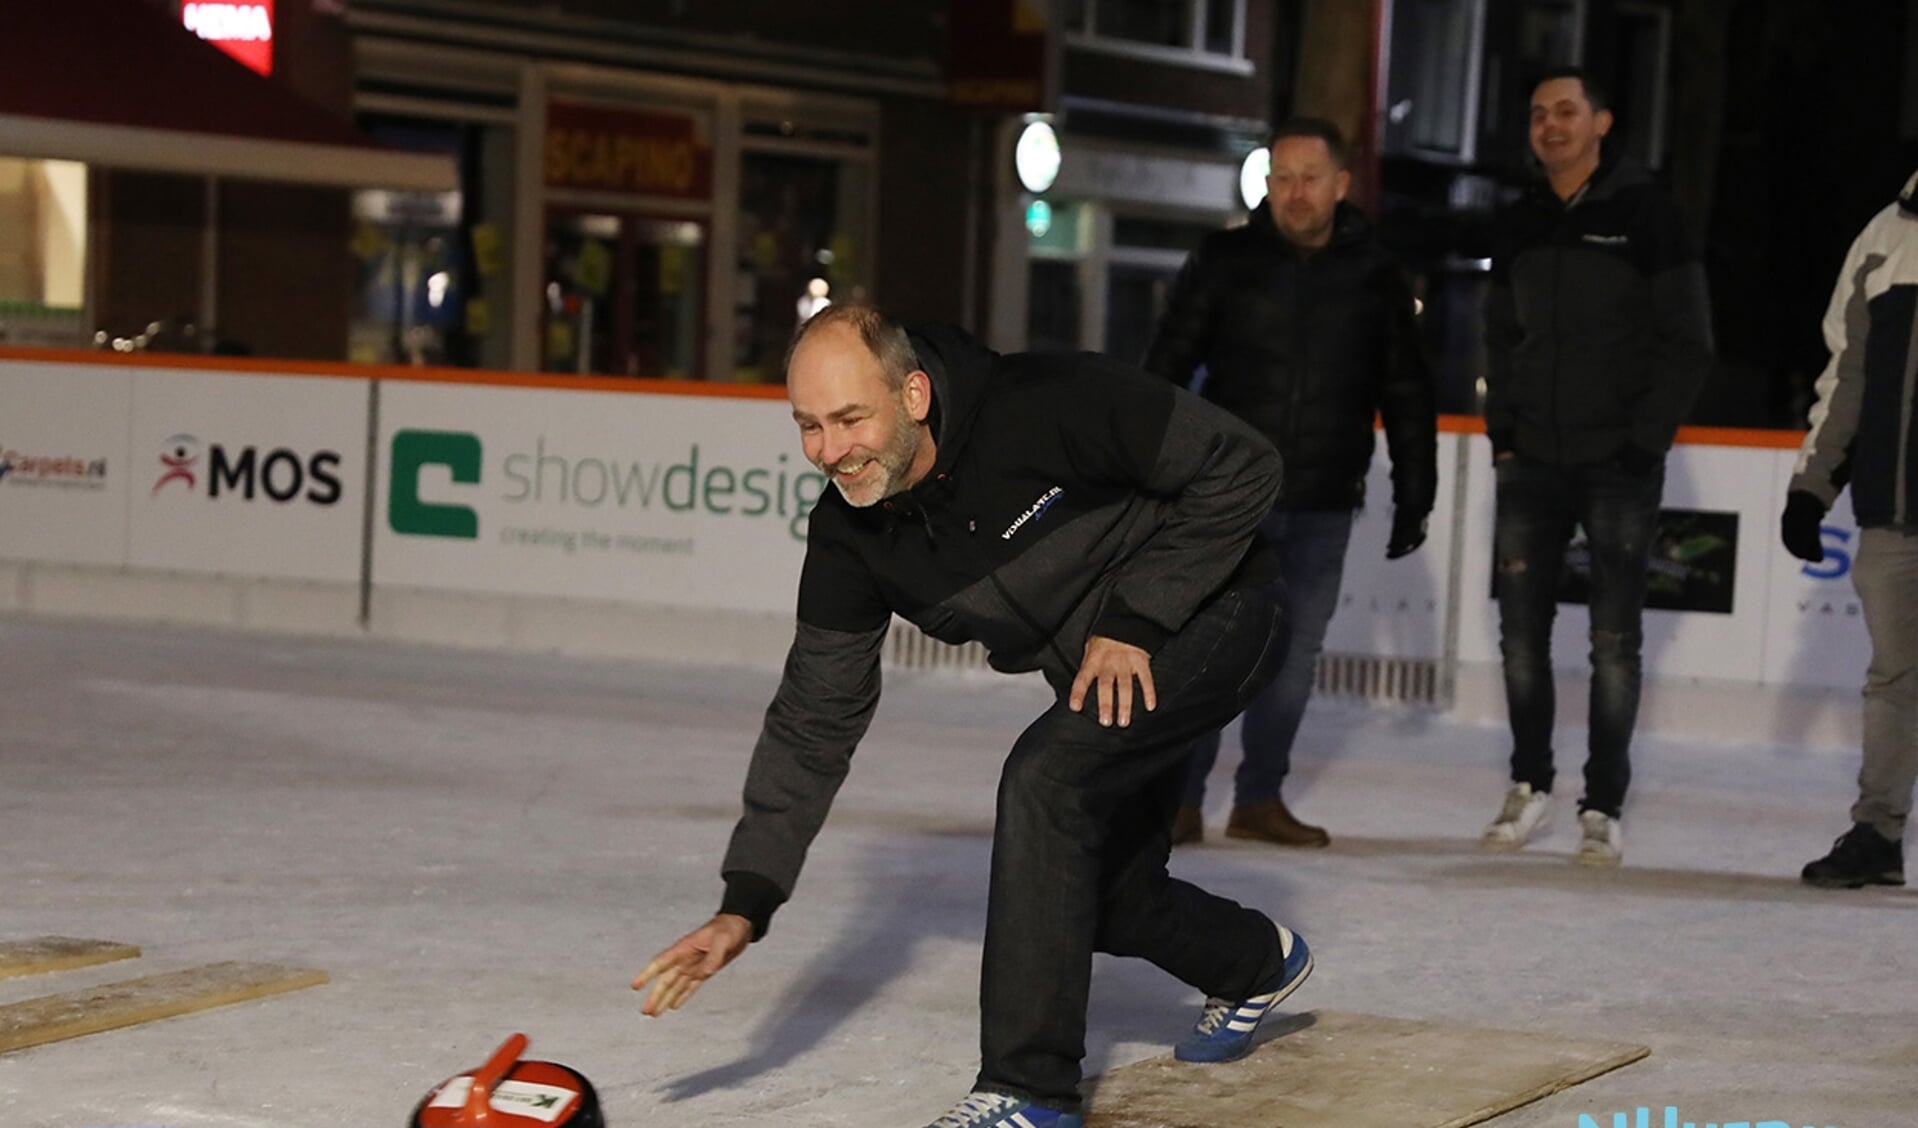 Wilbert van den Burg kwam vorig jaar voor het eerst in contact met de ijsbaan, toen hij werd gevraagd om in te vallen in een curlingteam